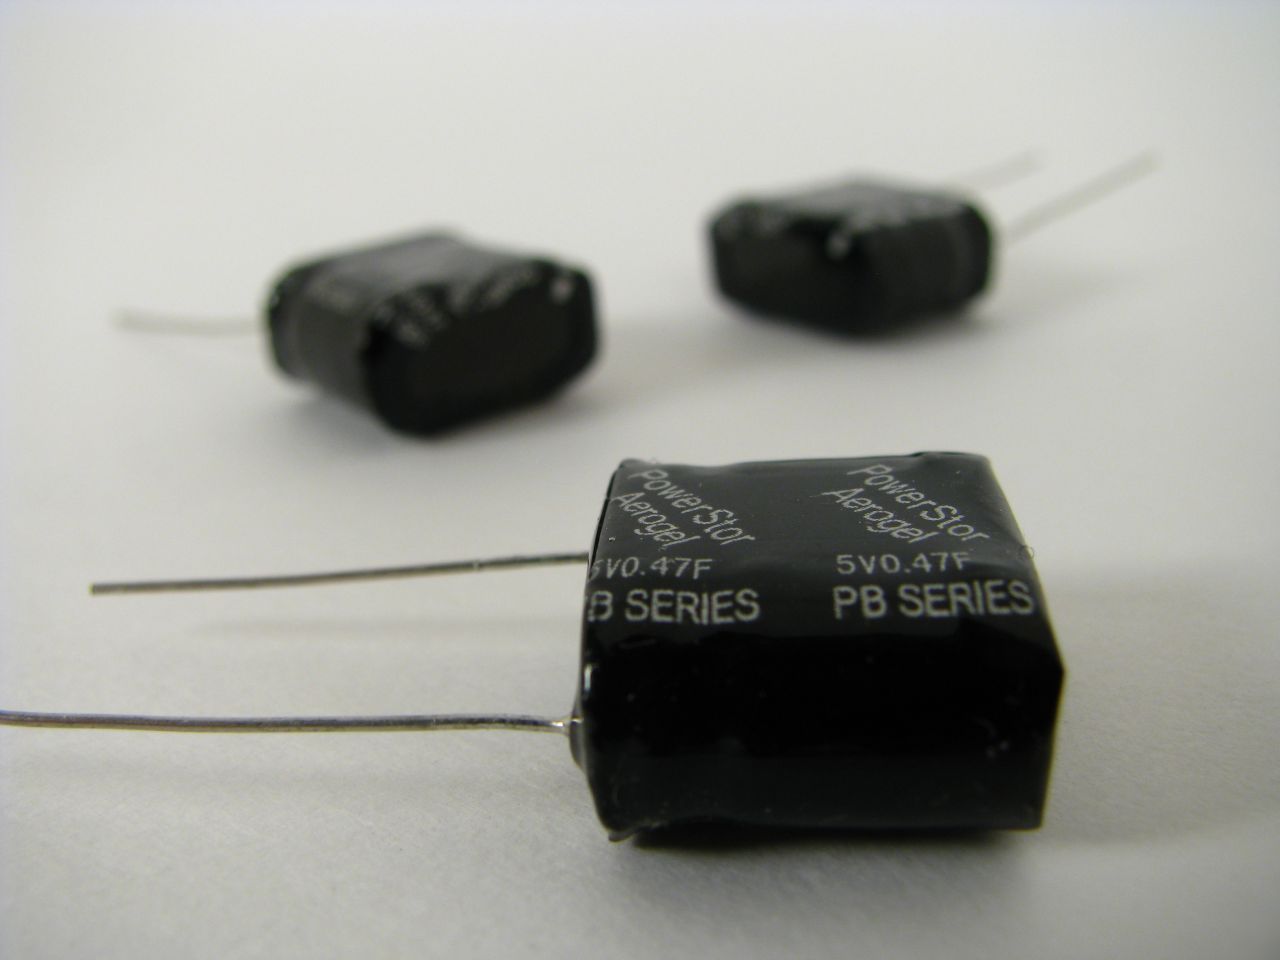 0.47F 5V supercap; .47 farad 5.0V super/ultra capacitor